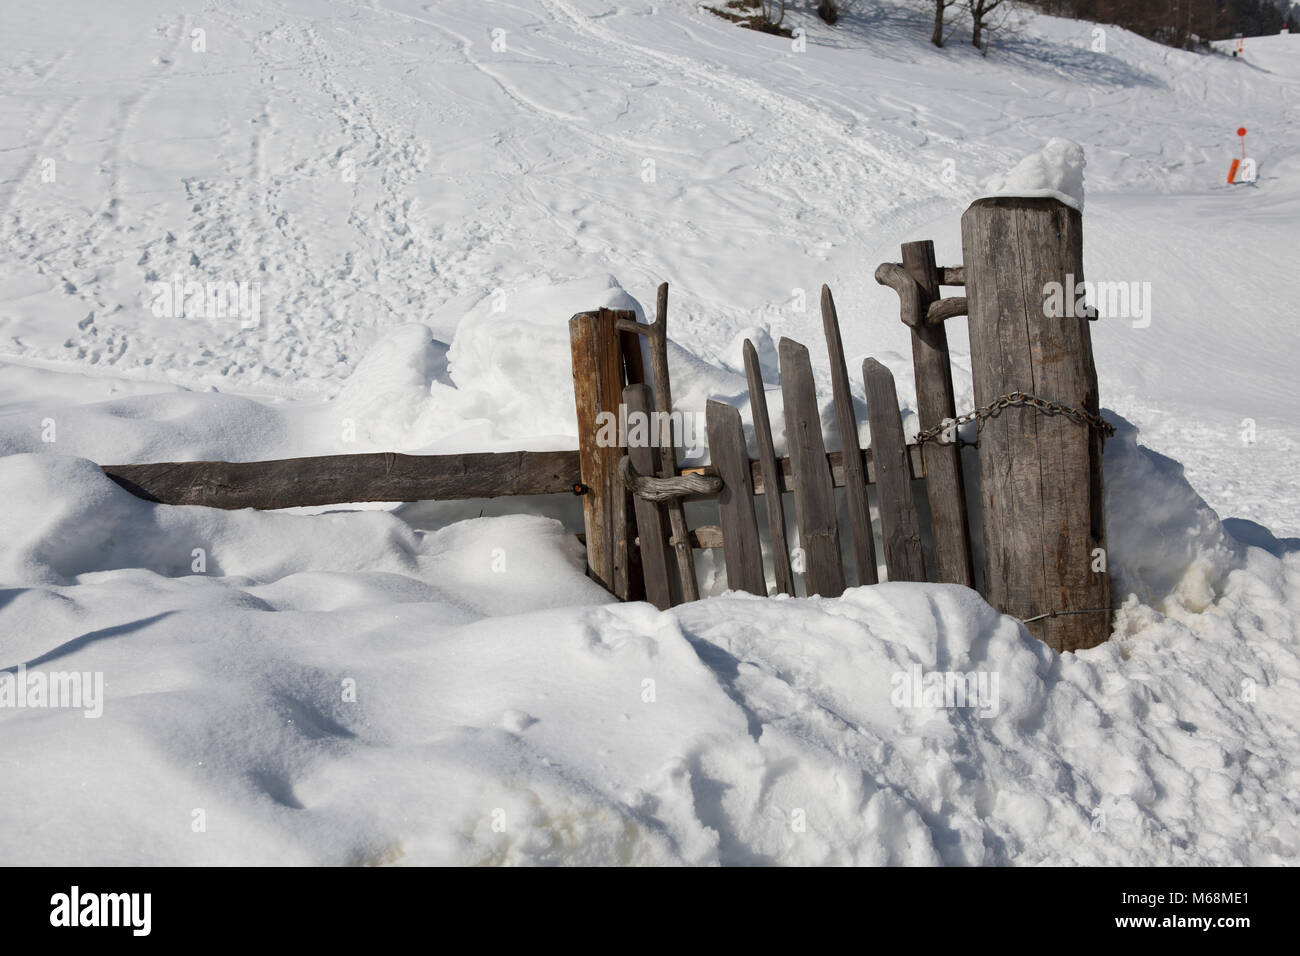 Europa Österreich Alpen Großarl - eine alte beschädigt hölzernen Zaun im Schnee Stockfoto